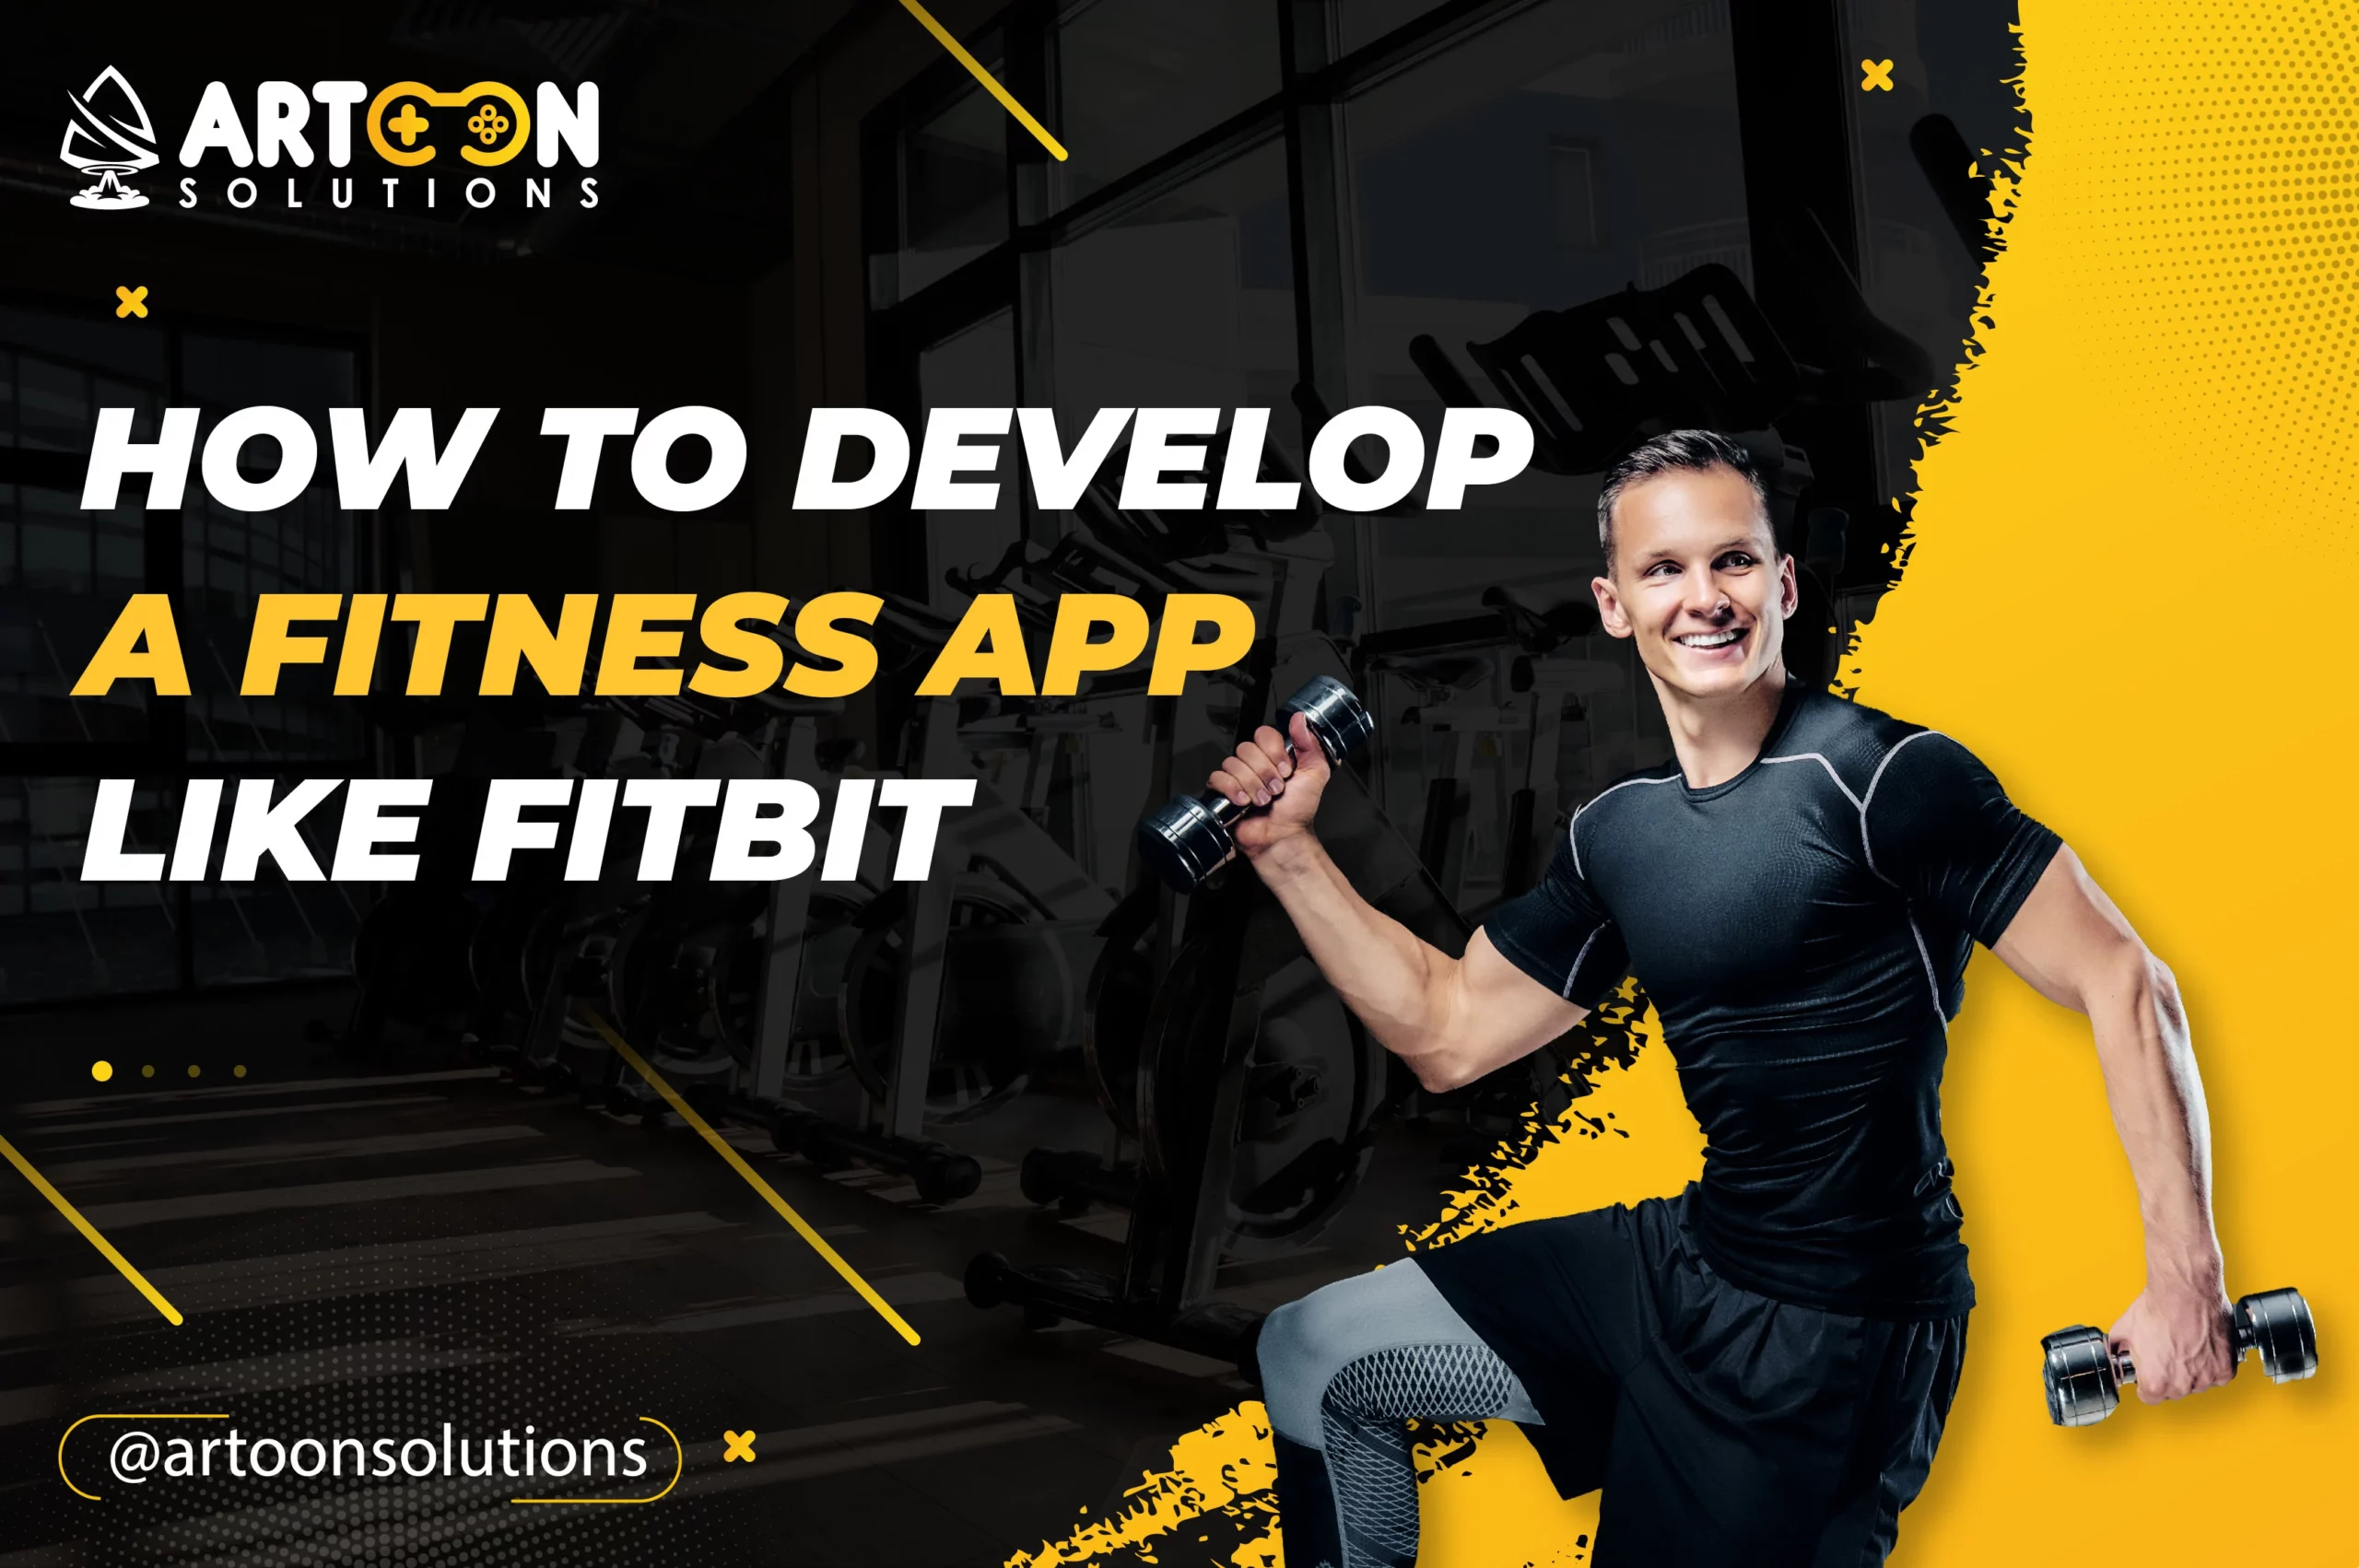 fitness app like Fitbit